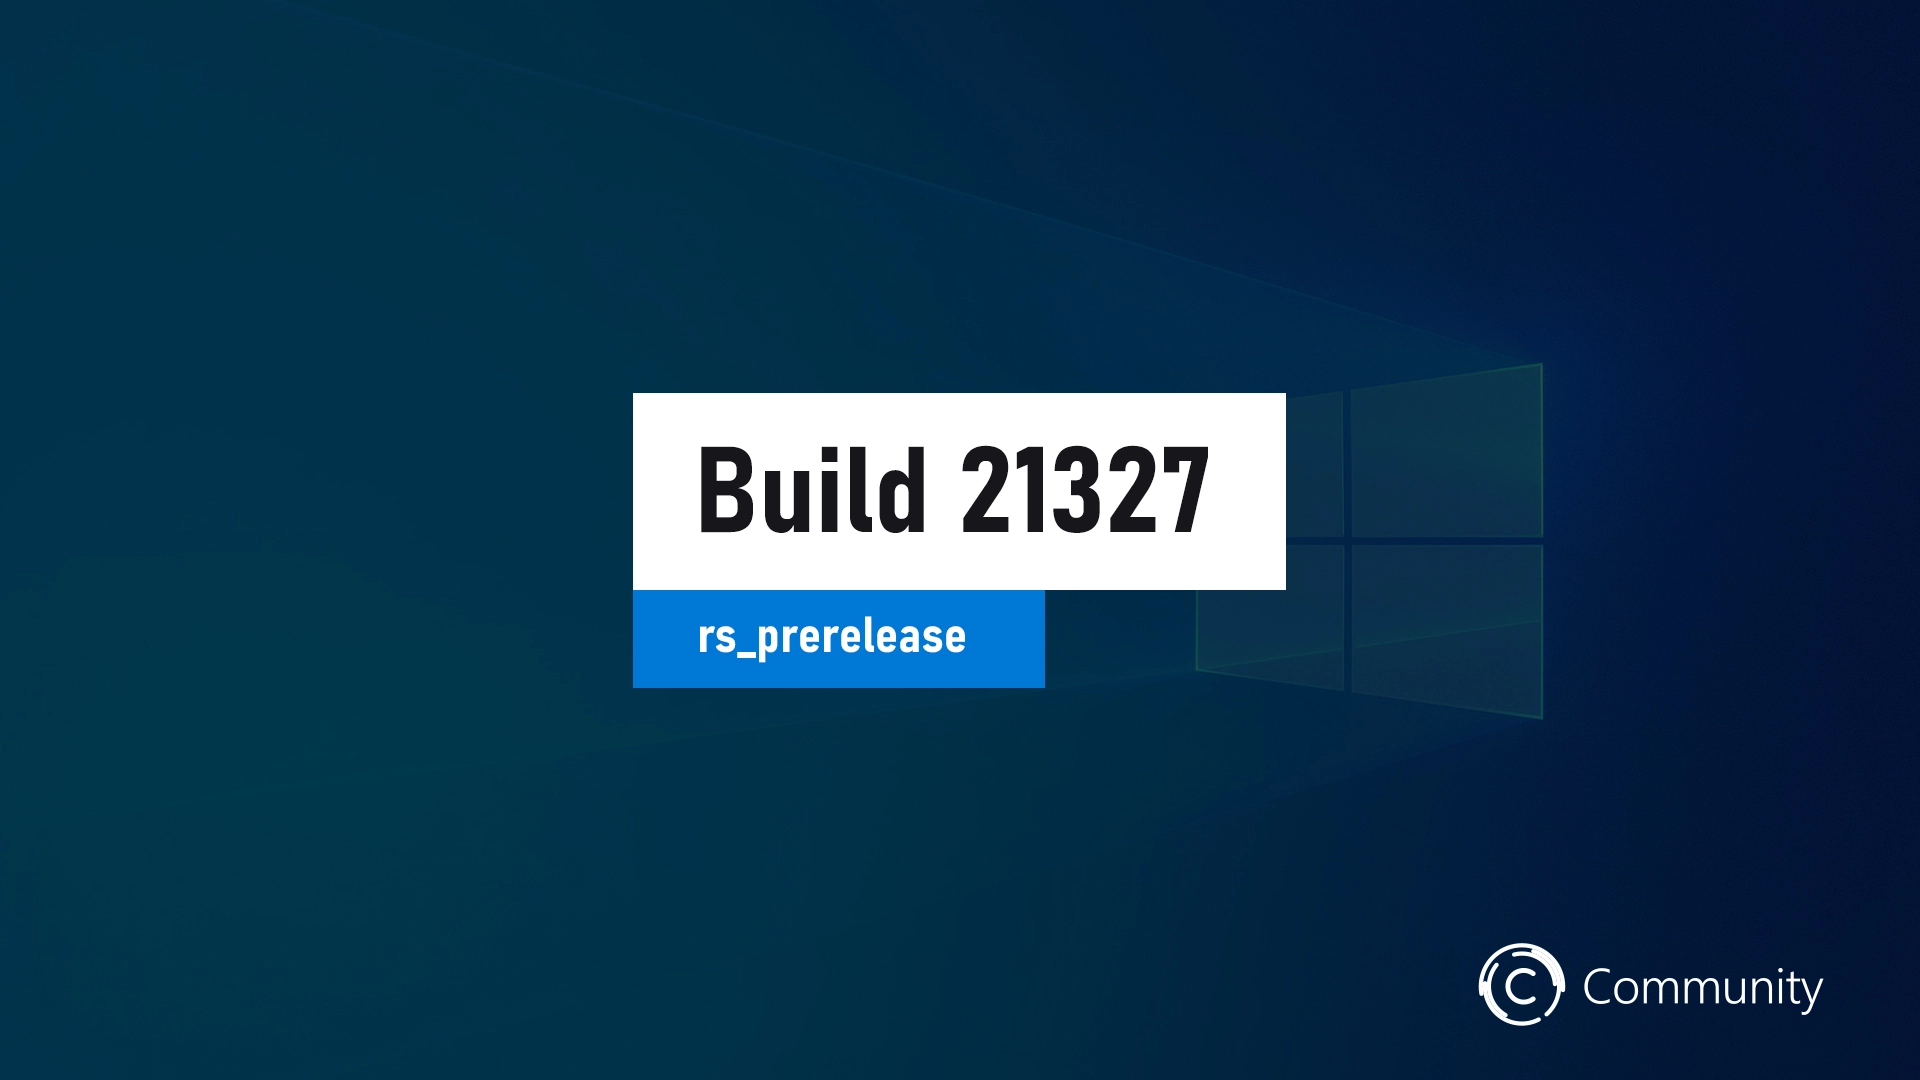 O Windows 10 Build 21327 está disponível para teste e download